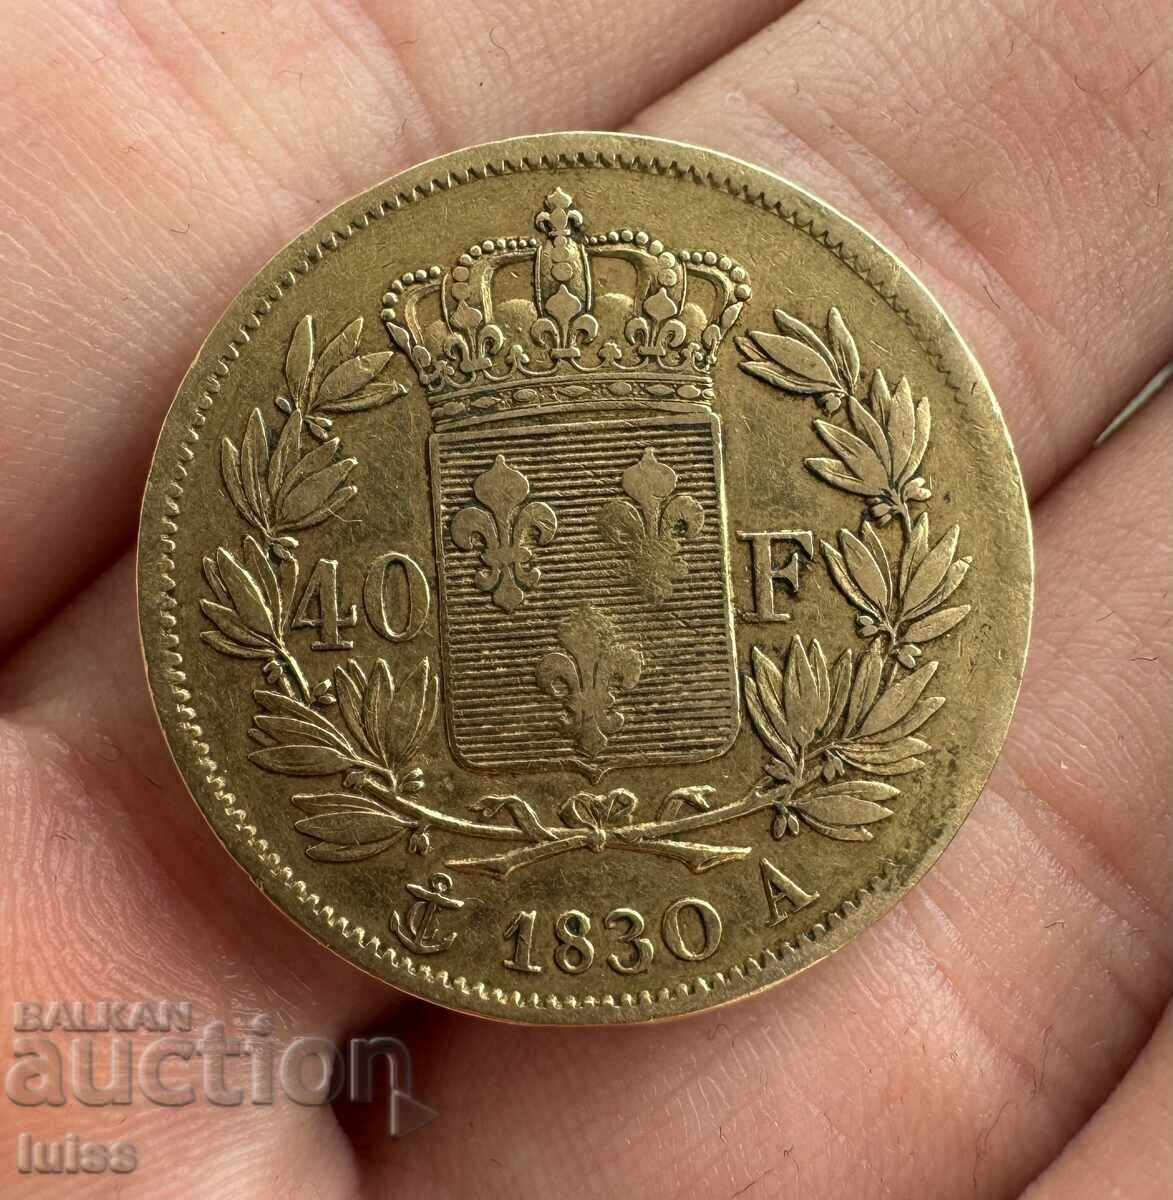 Monedă de aur franceză de 40 de franci 1830. Carol al X-lea